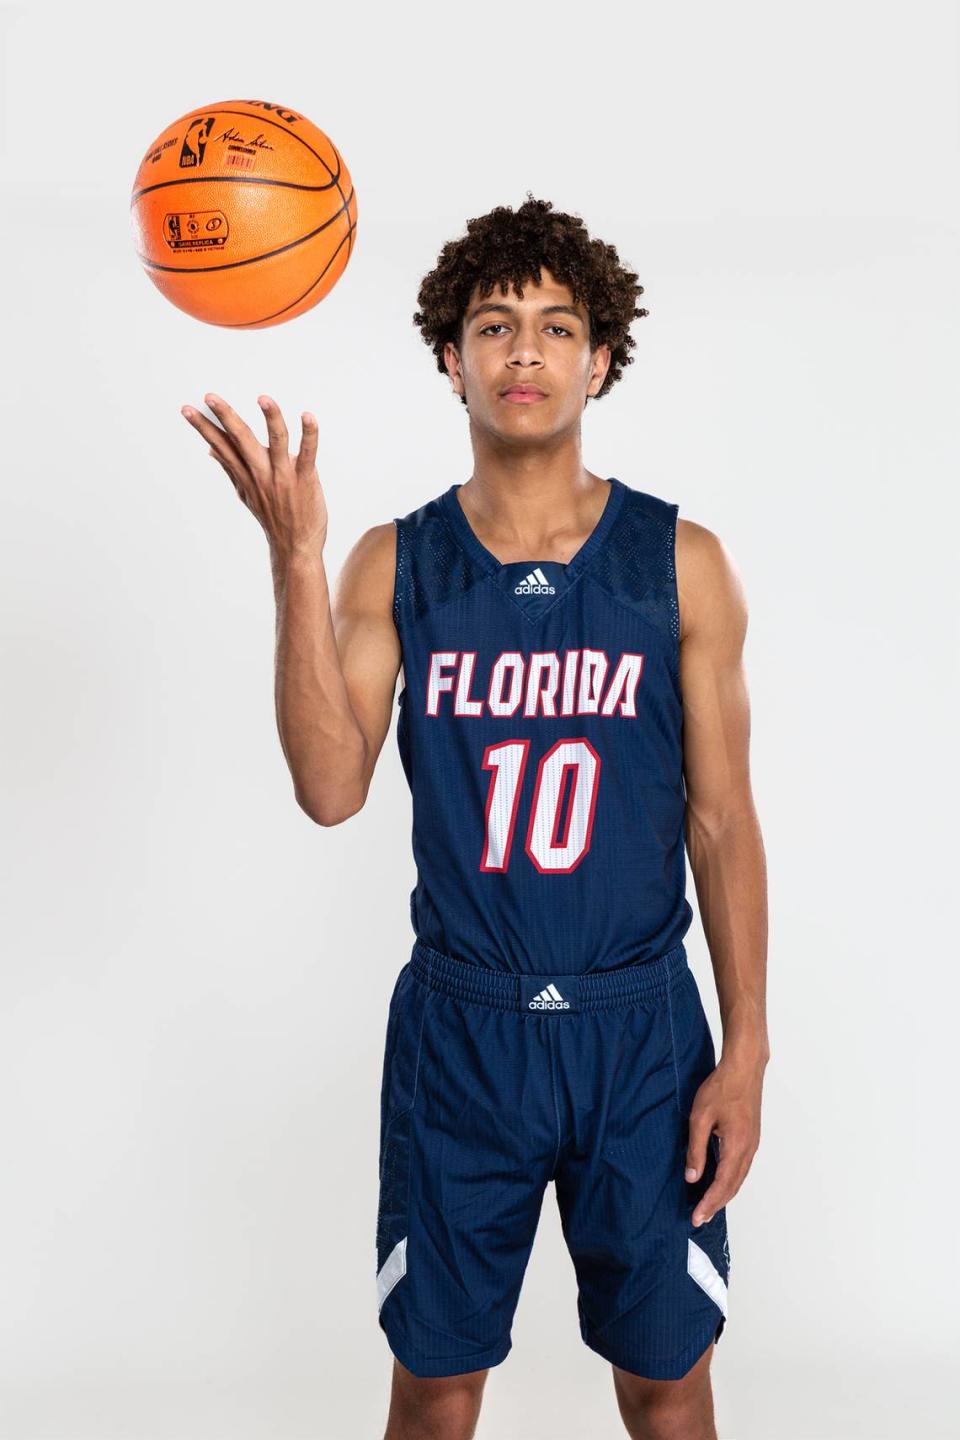 Nathan Williams of the Florida Christian boys’ basketball team.